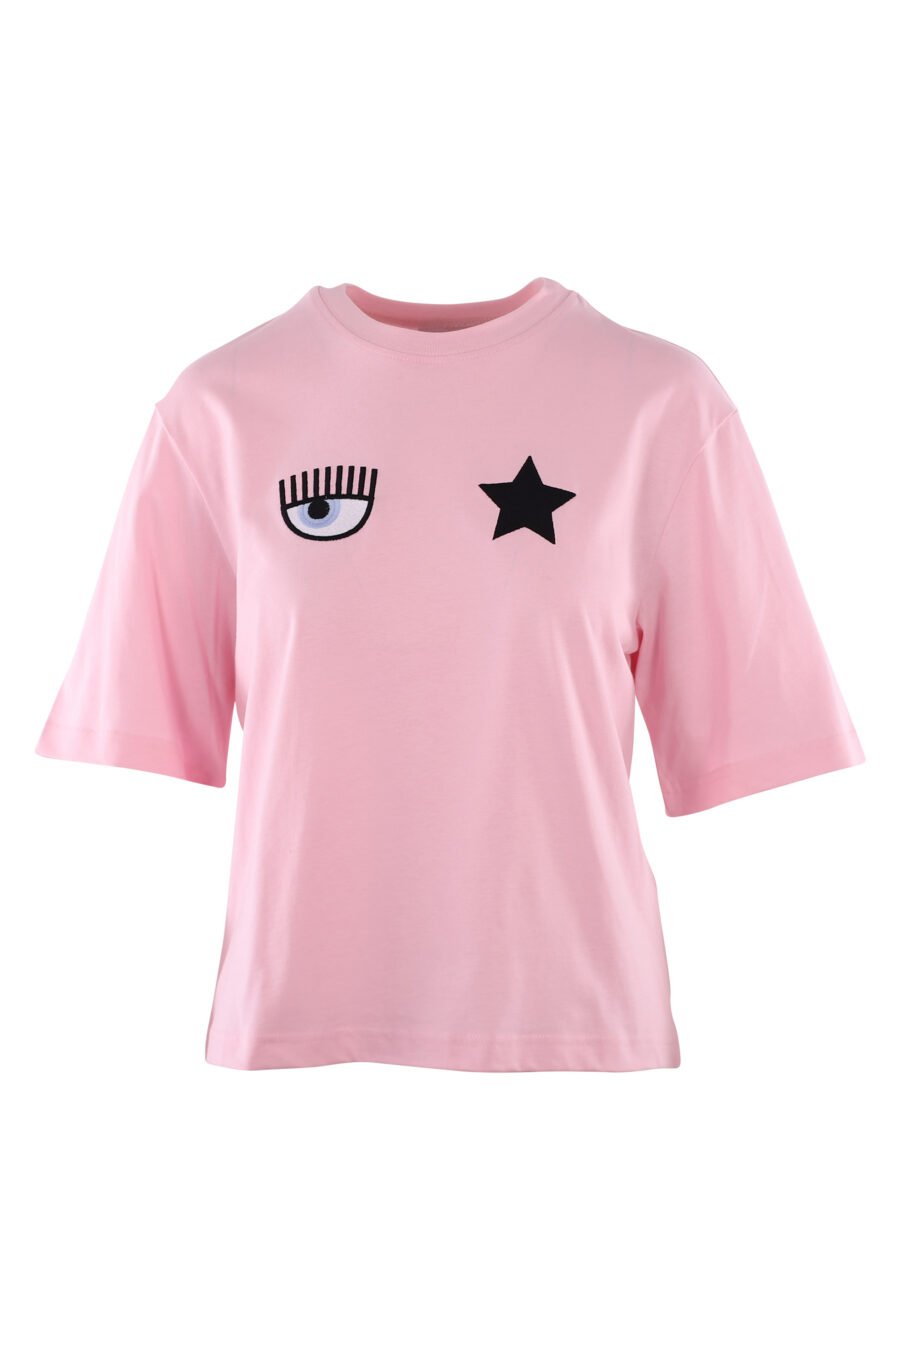 T-shirt cor-de-rosa com o logótipo do olho e da estrela - IMG 6123